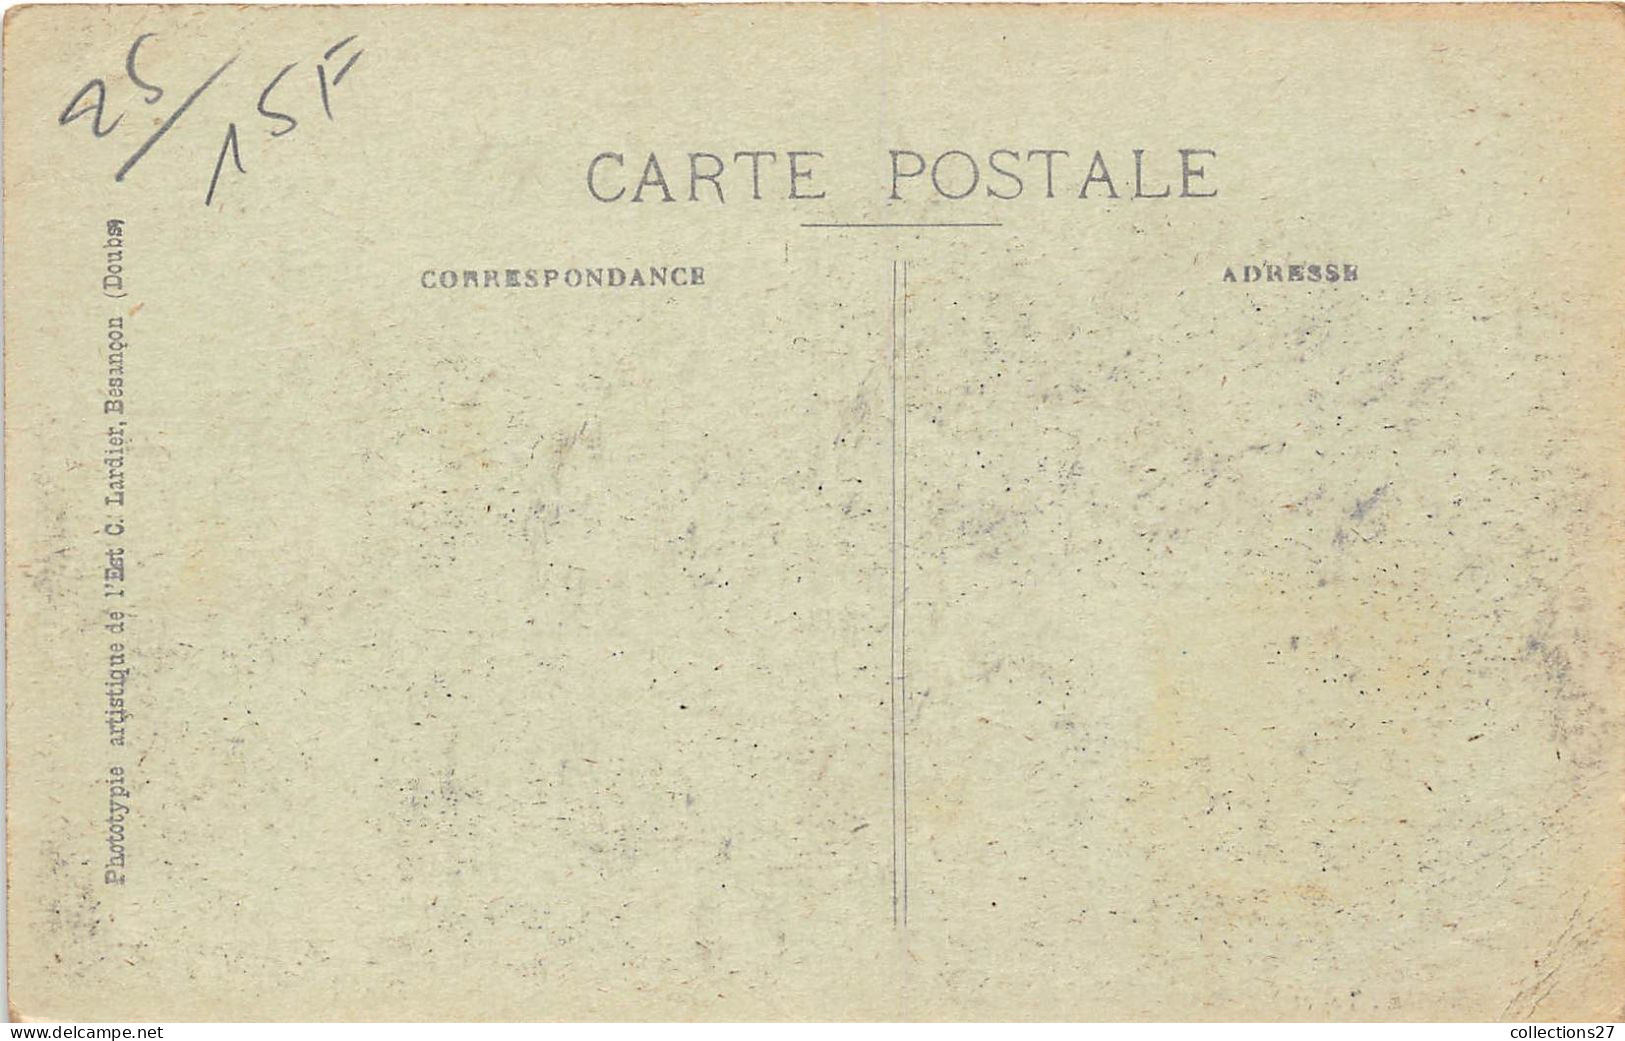 LOT DE 6000 CARTES POSTALES ANCIENNES FRANCE -DROUILLE- VILLES, VILLAGES UNIQUEMENT ( QUELQUES EXEMPLES ) - 500 Postcards Min.